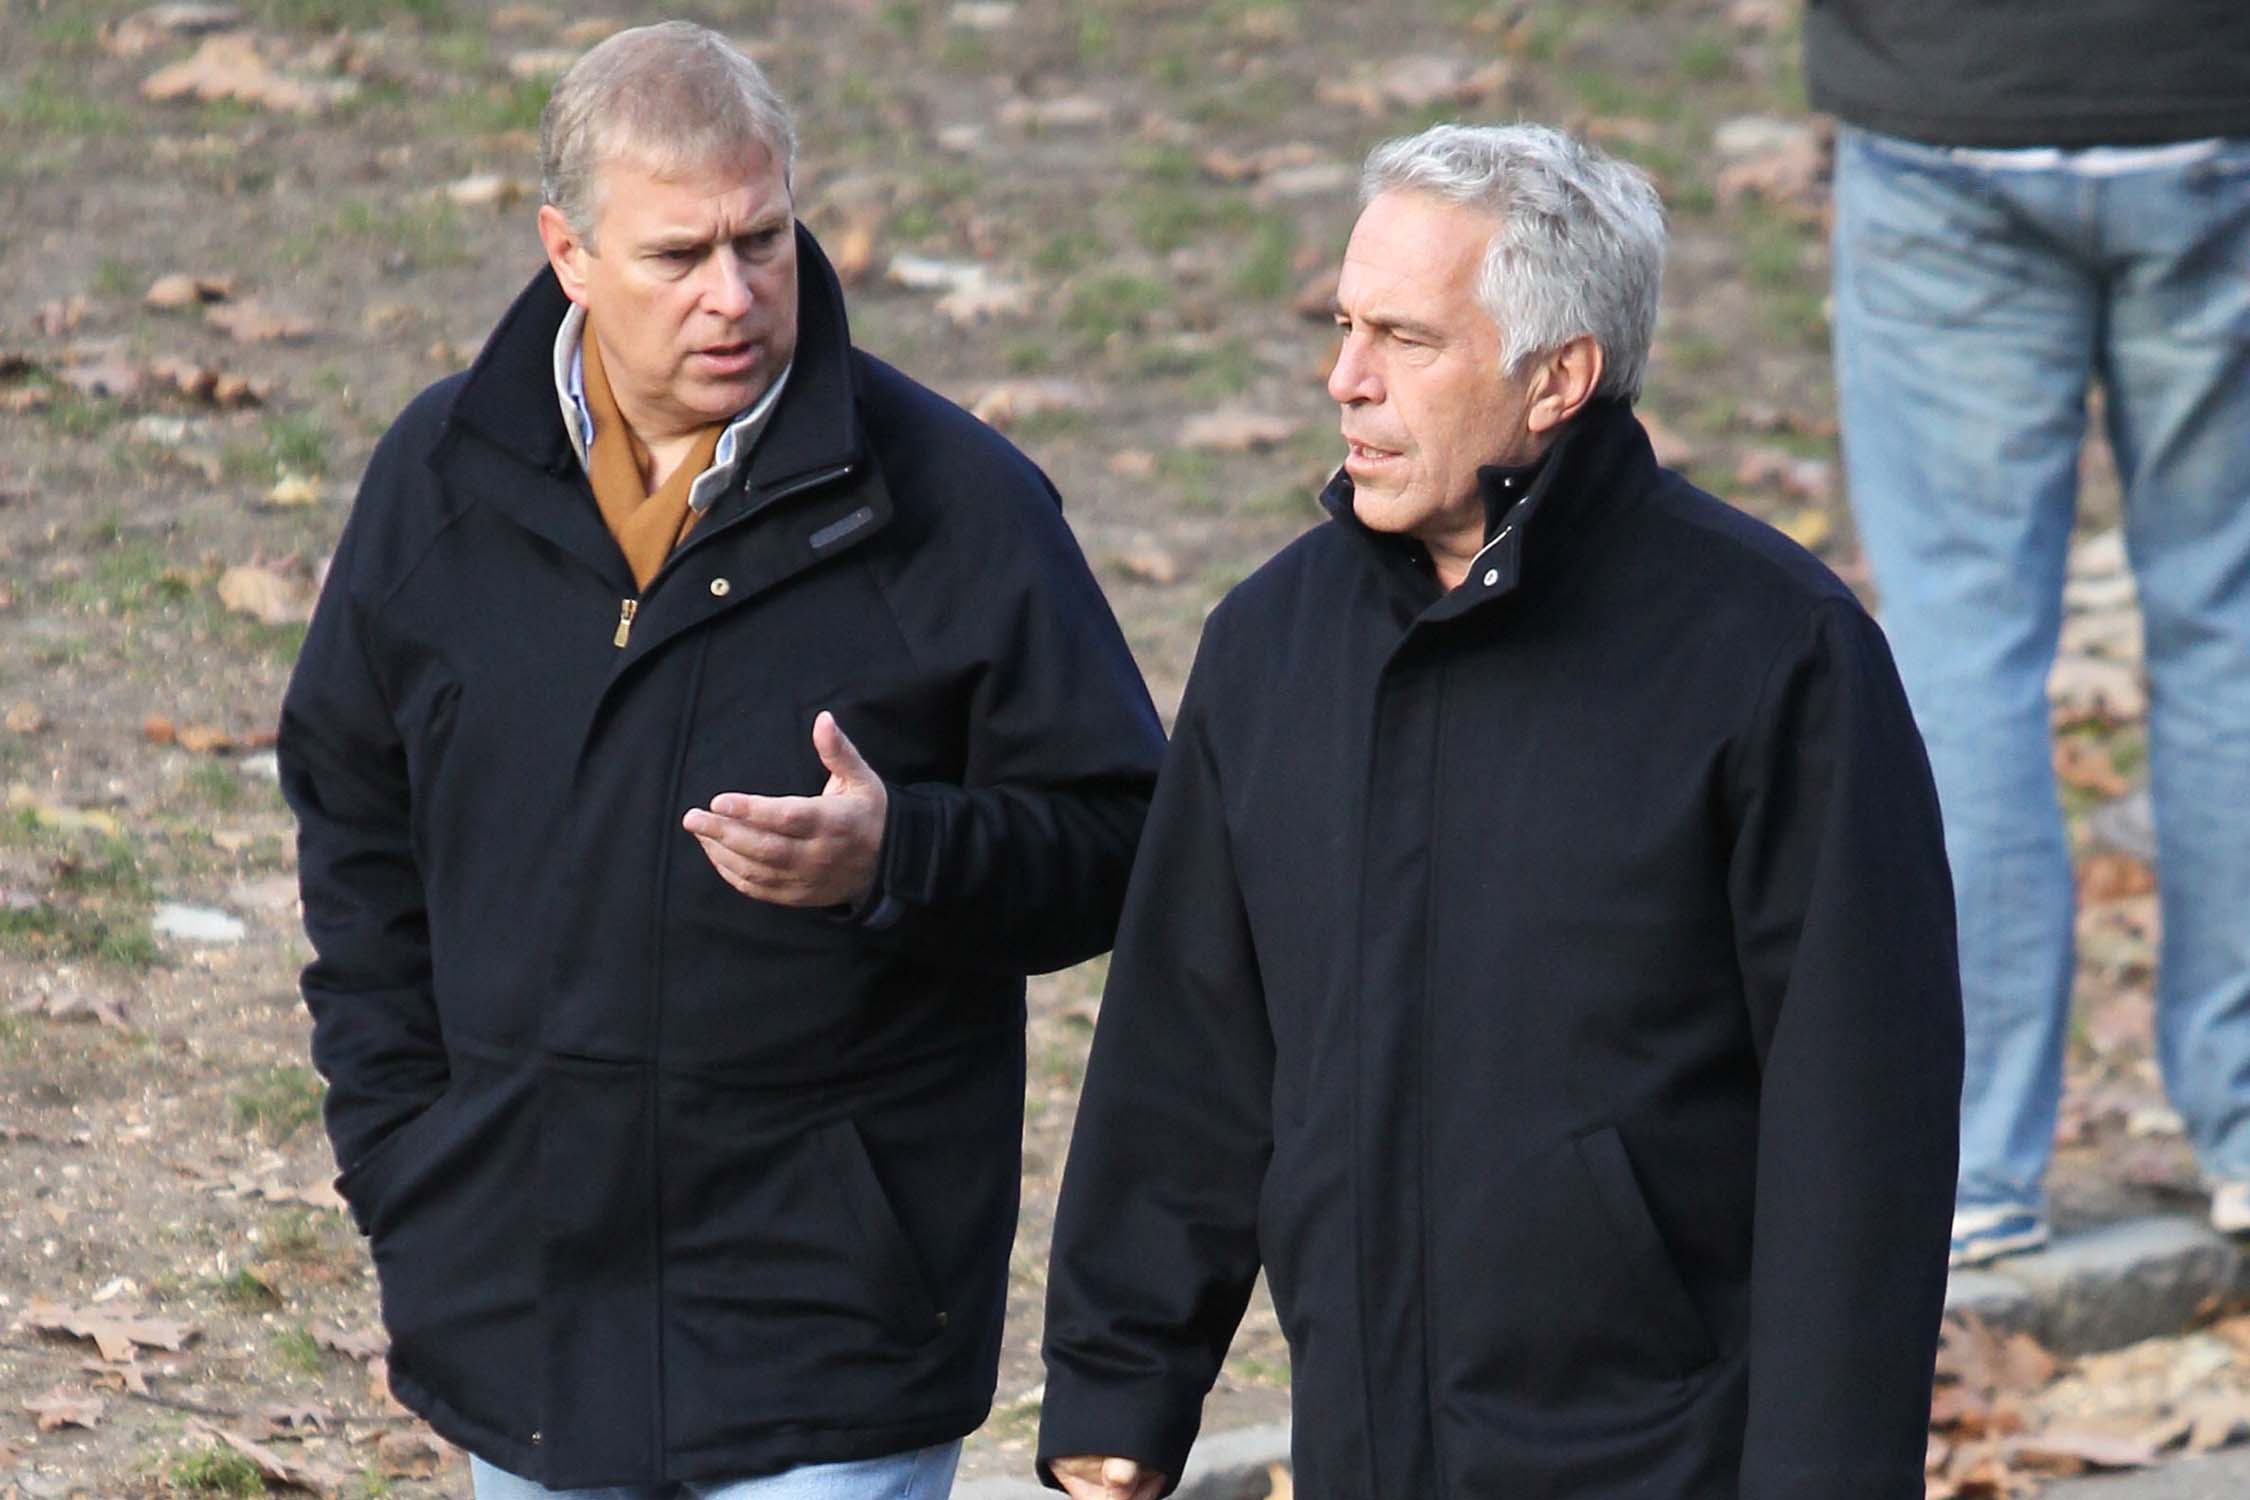 Andrew a affirmé avoir rendu visite à Epstein à New York (photo) pour mettre fin à leur amitié en 2010.